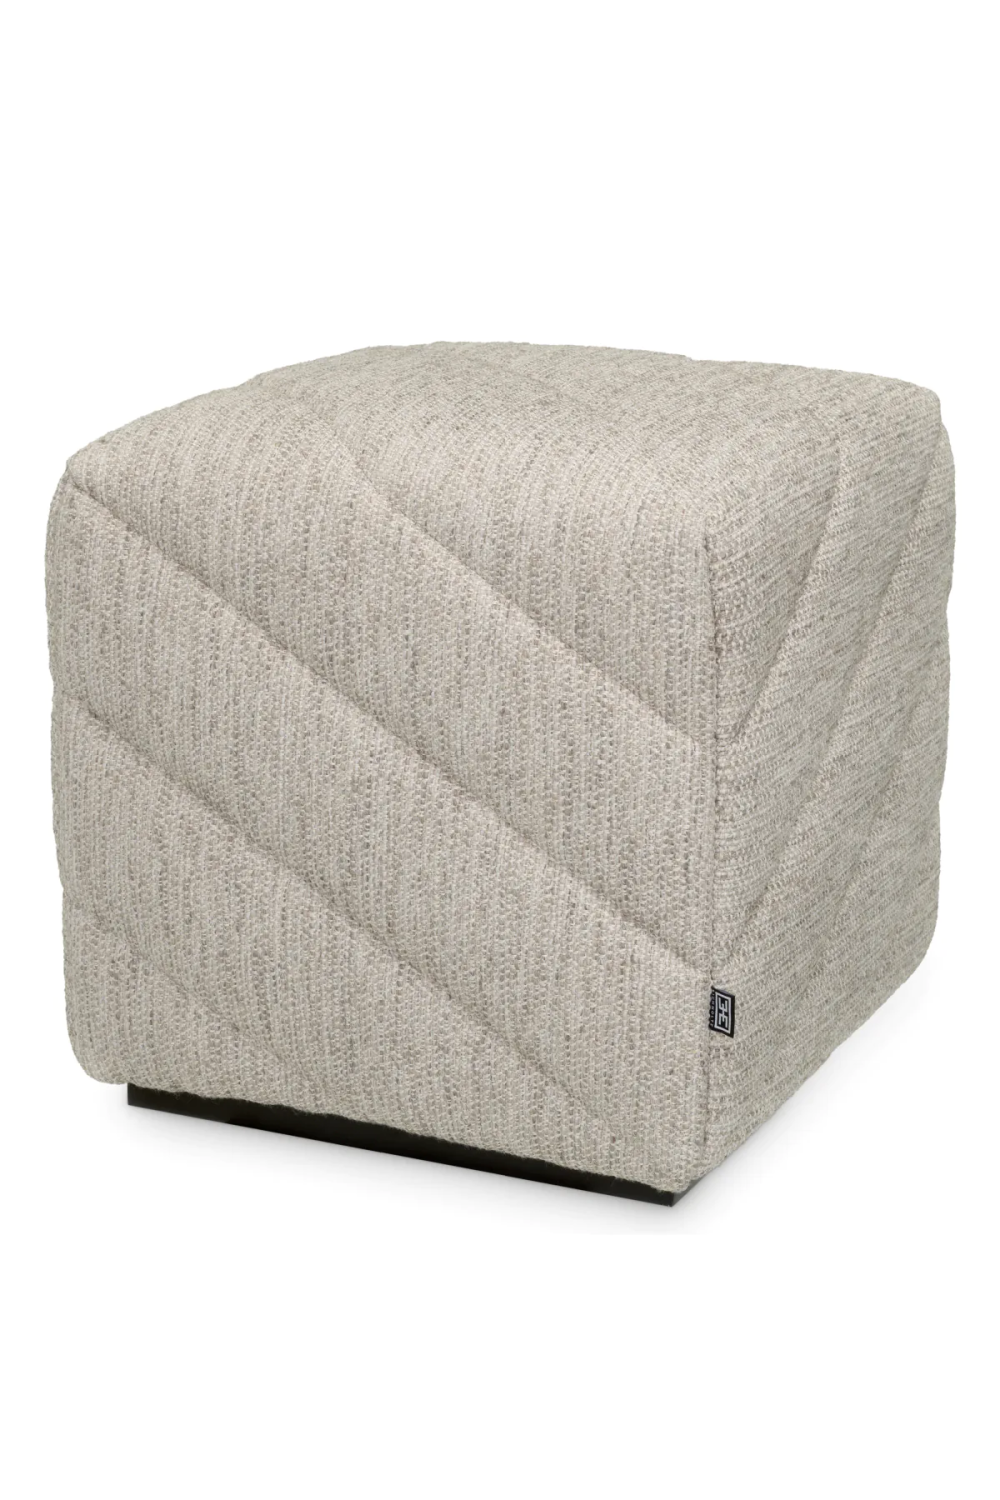 Upholstered Modern Stool | Eichholtz Avellino | Oroa.com